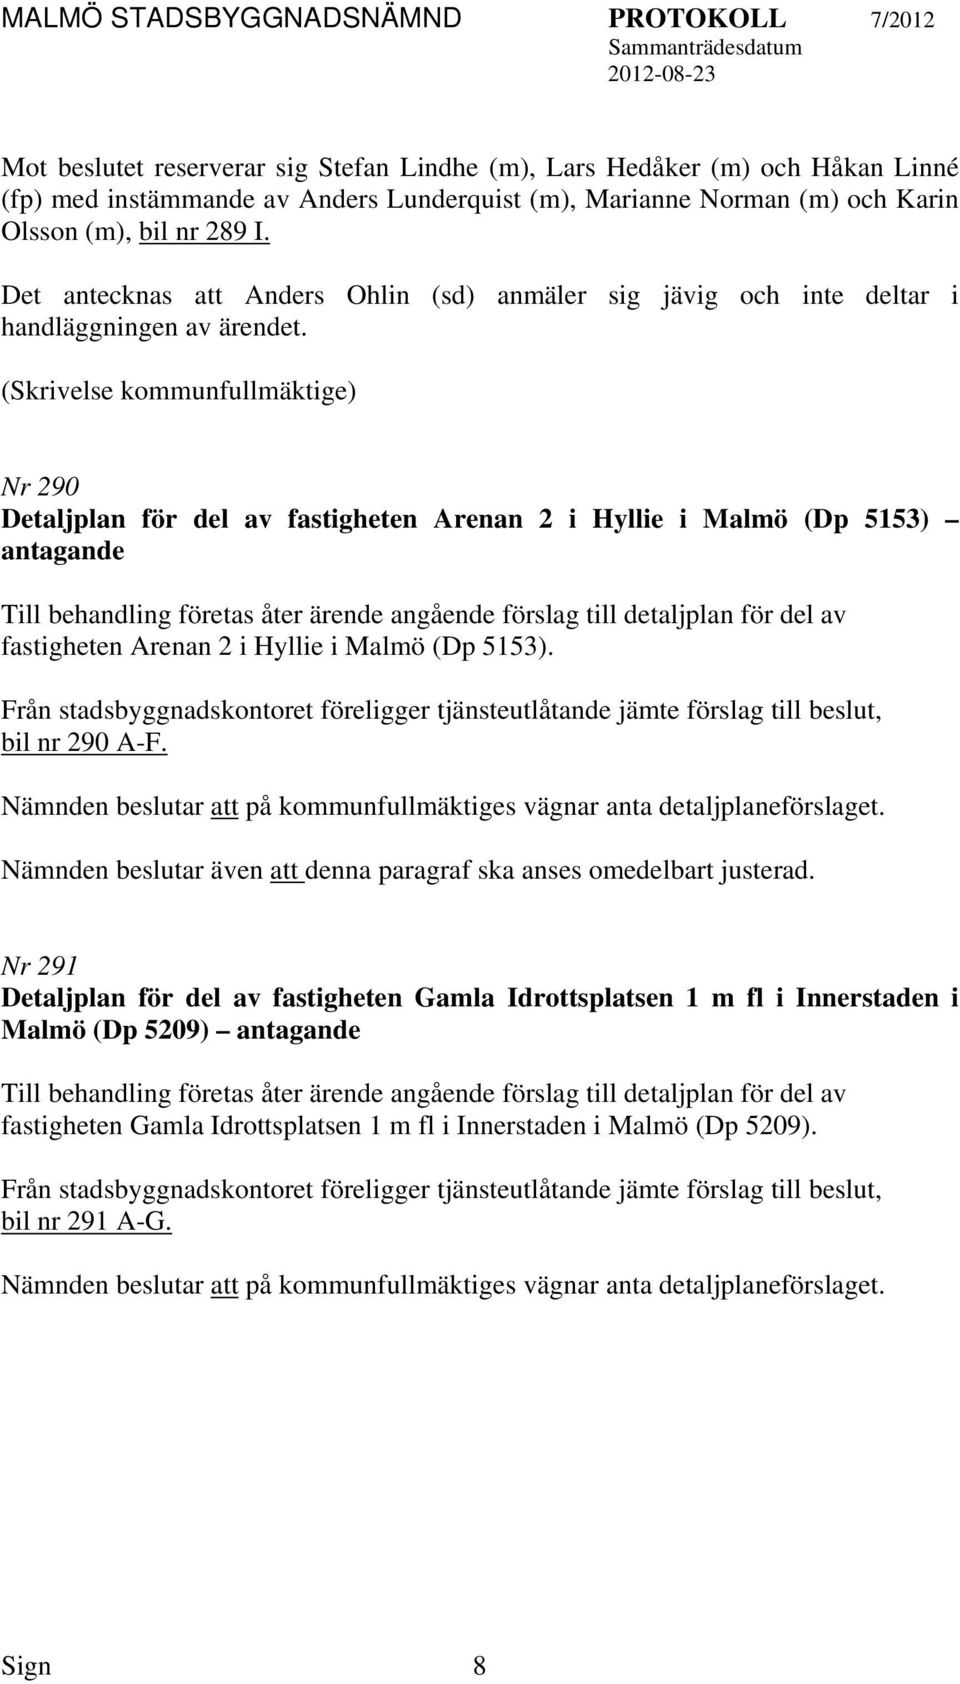 (Skrivelse kommunfullmäktige) Nr 290 Detaljplan för del av fastigheten Arenan 2 i Hyllie i Malmö (Dp 5153) antagande Till behandling företas åter ärende angående förslag till detaljplan för del av